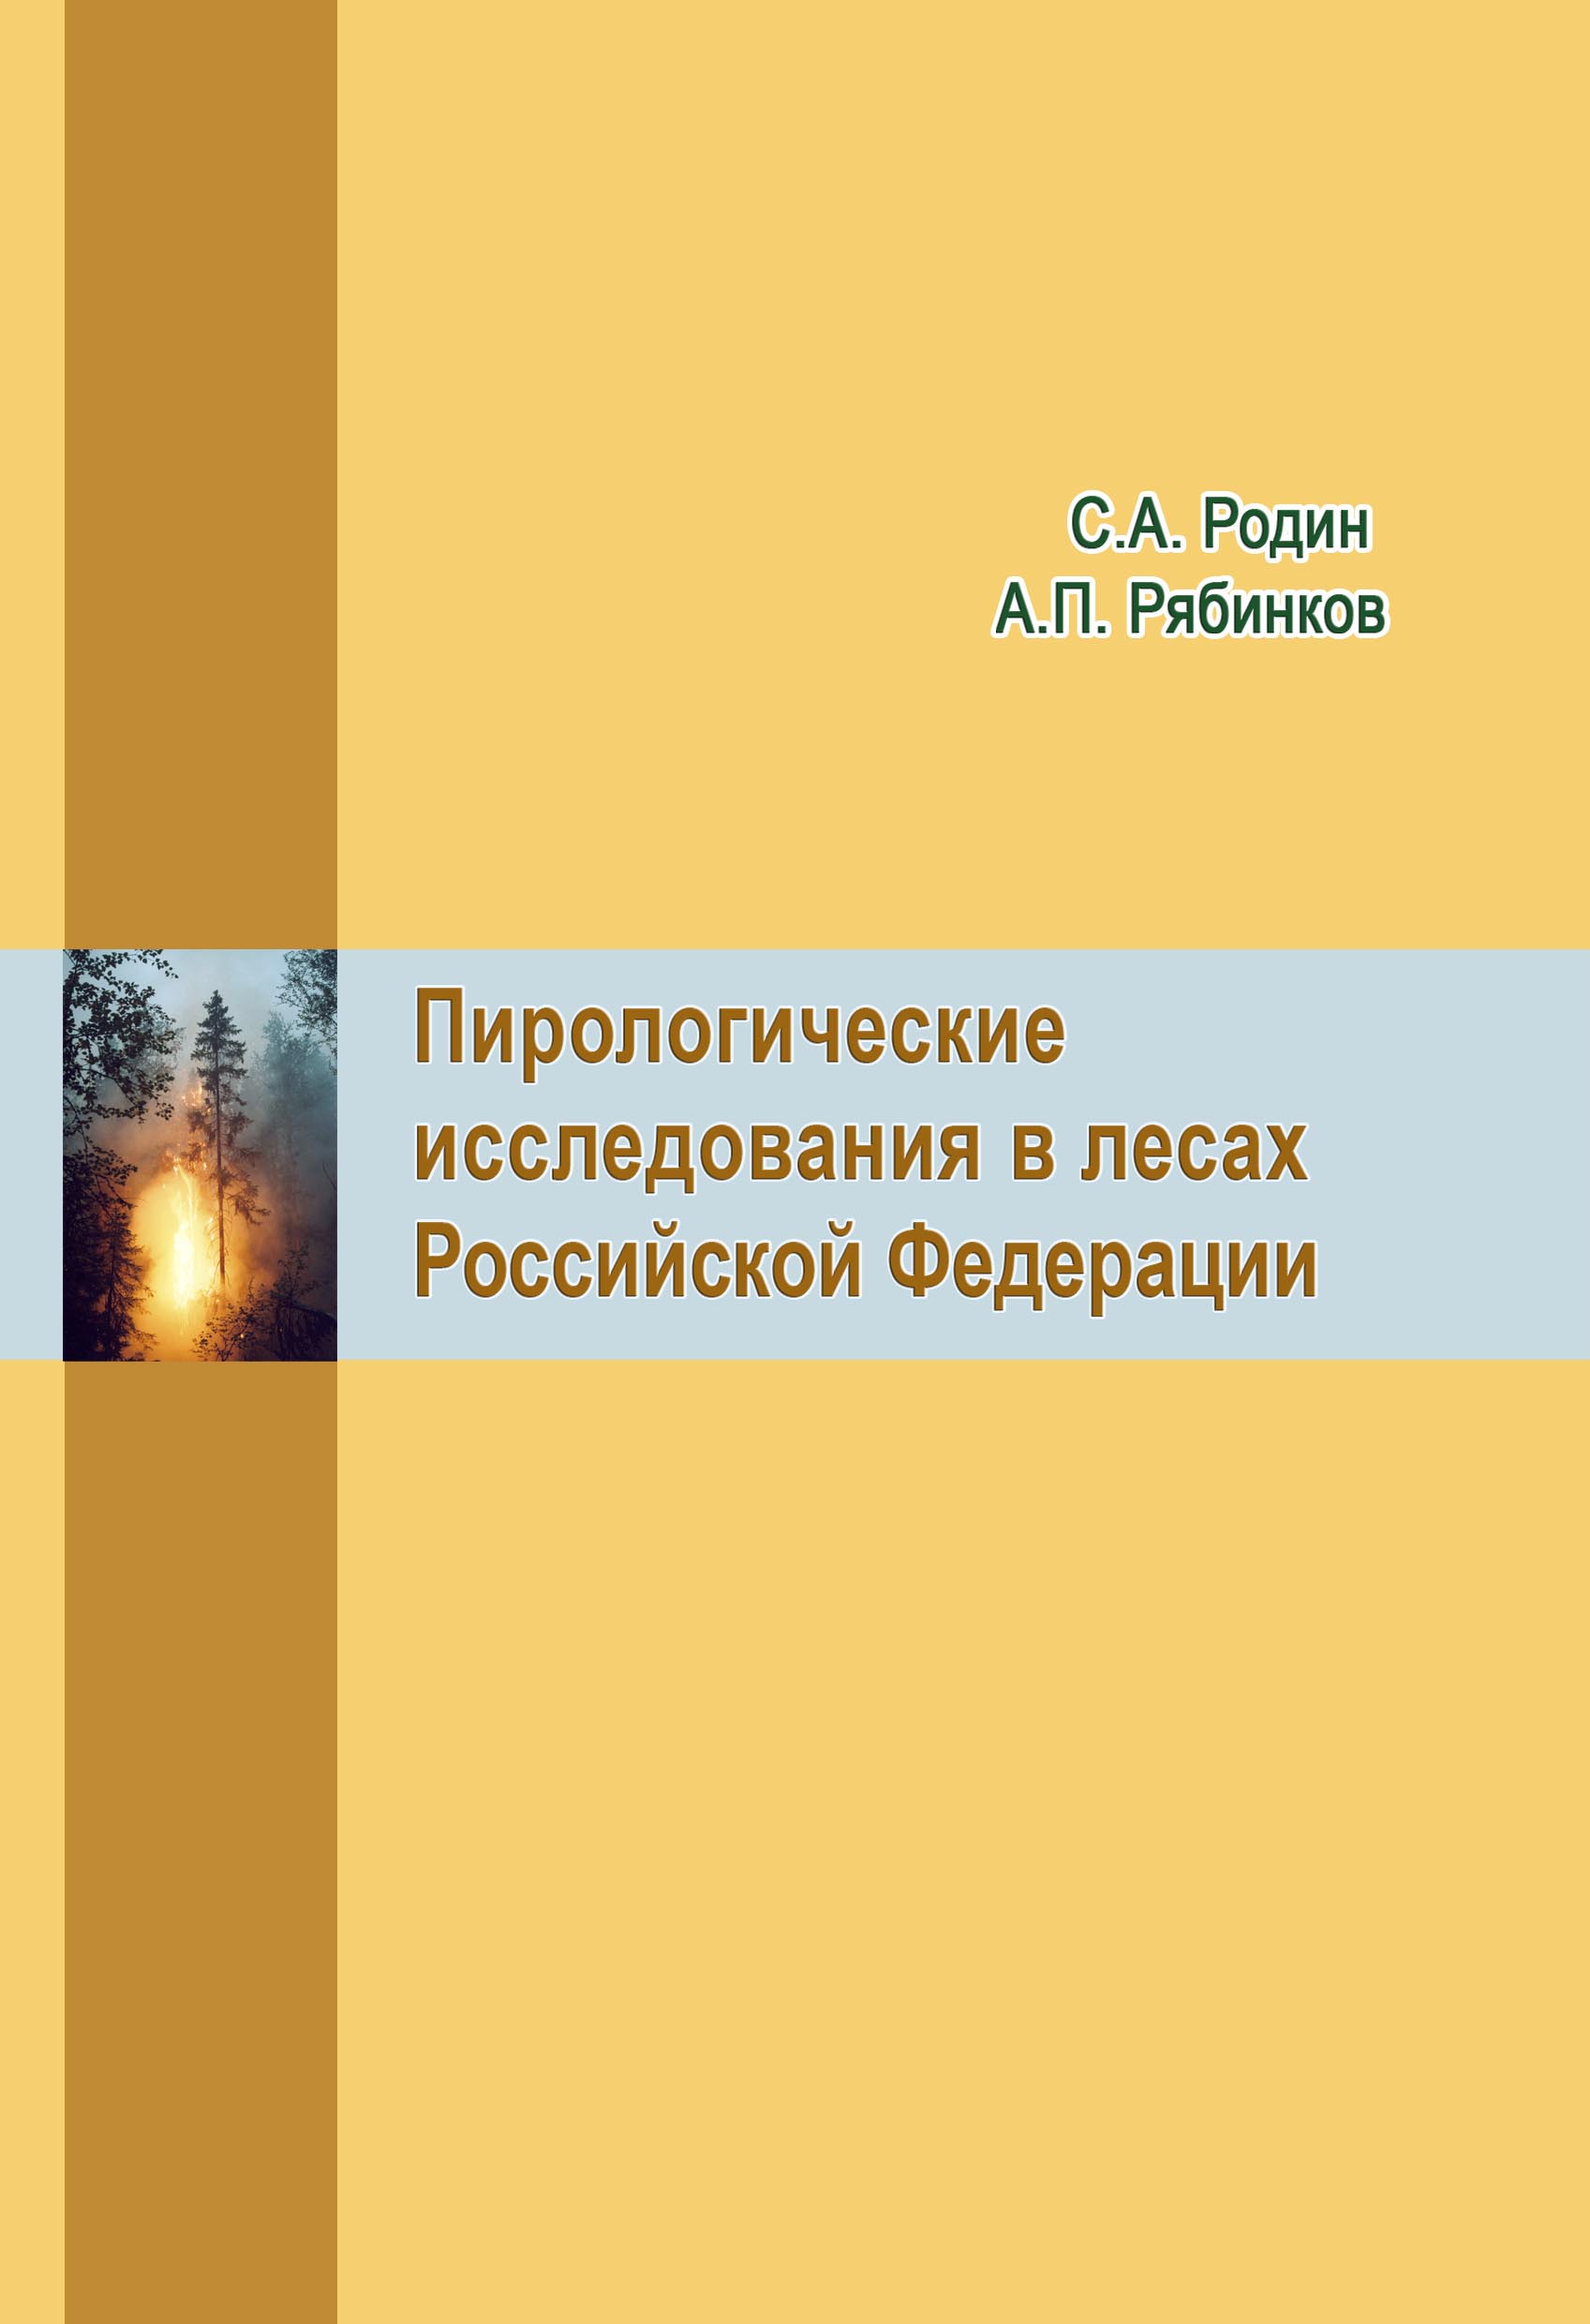 Пирологические исследования в лесах Российской Федерации